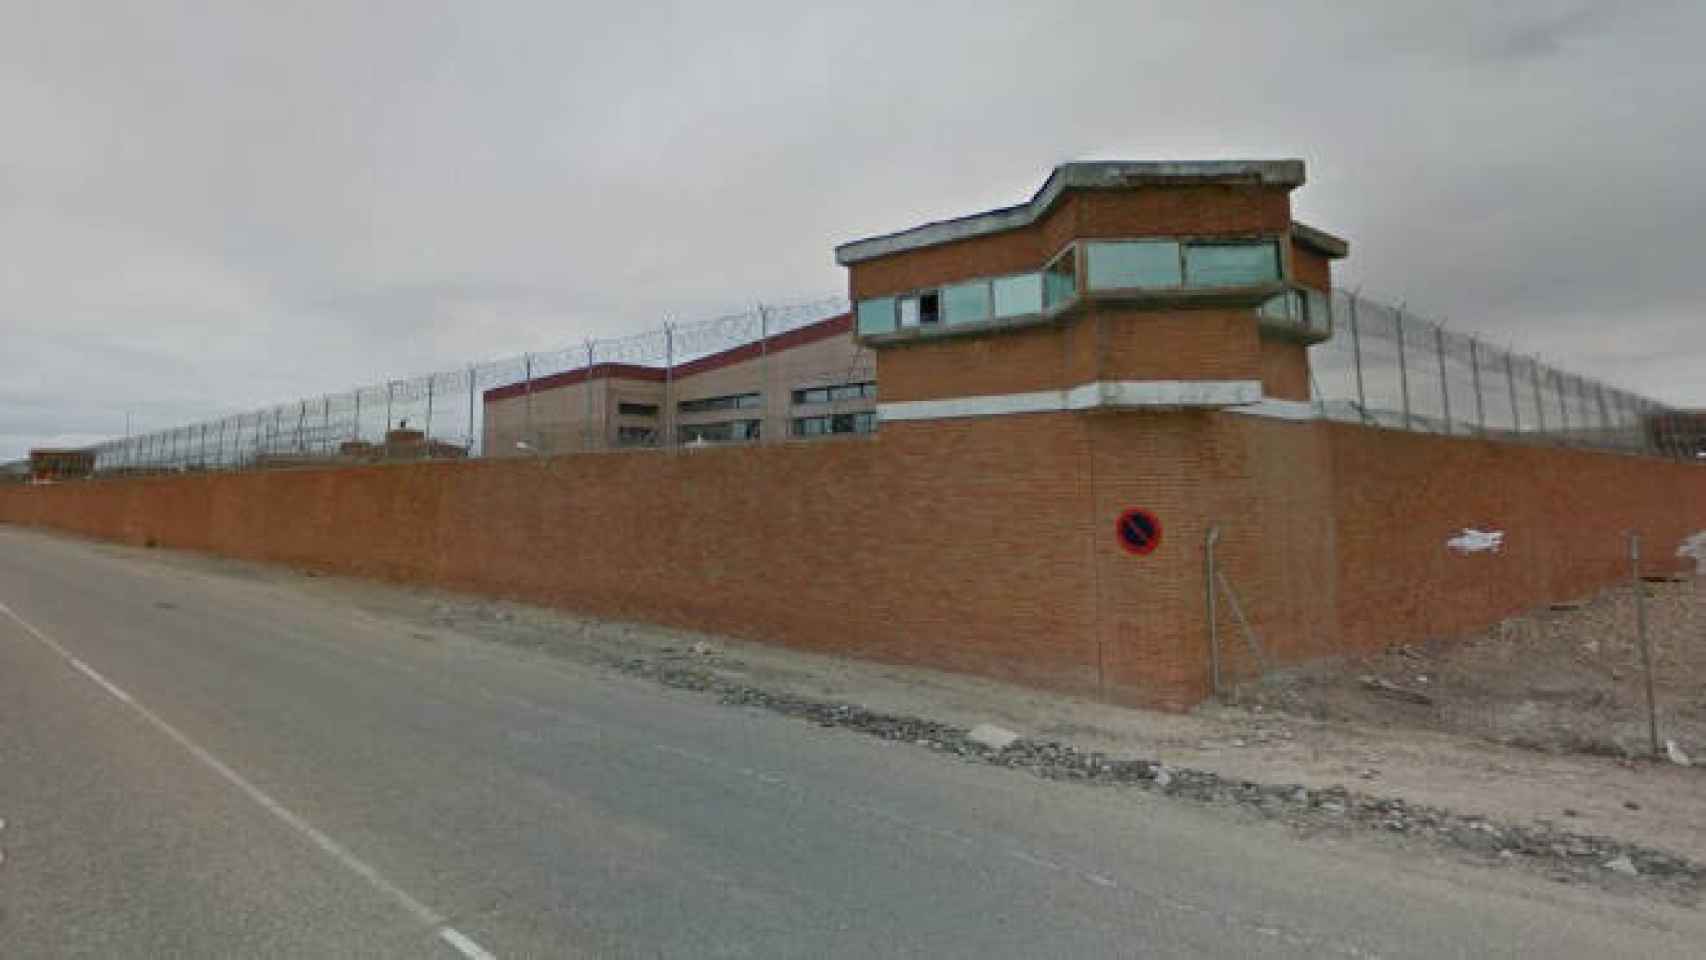 La cárcel Ocaña I, donde han ocurrido los hechos.